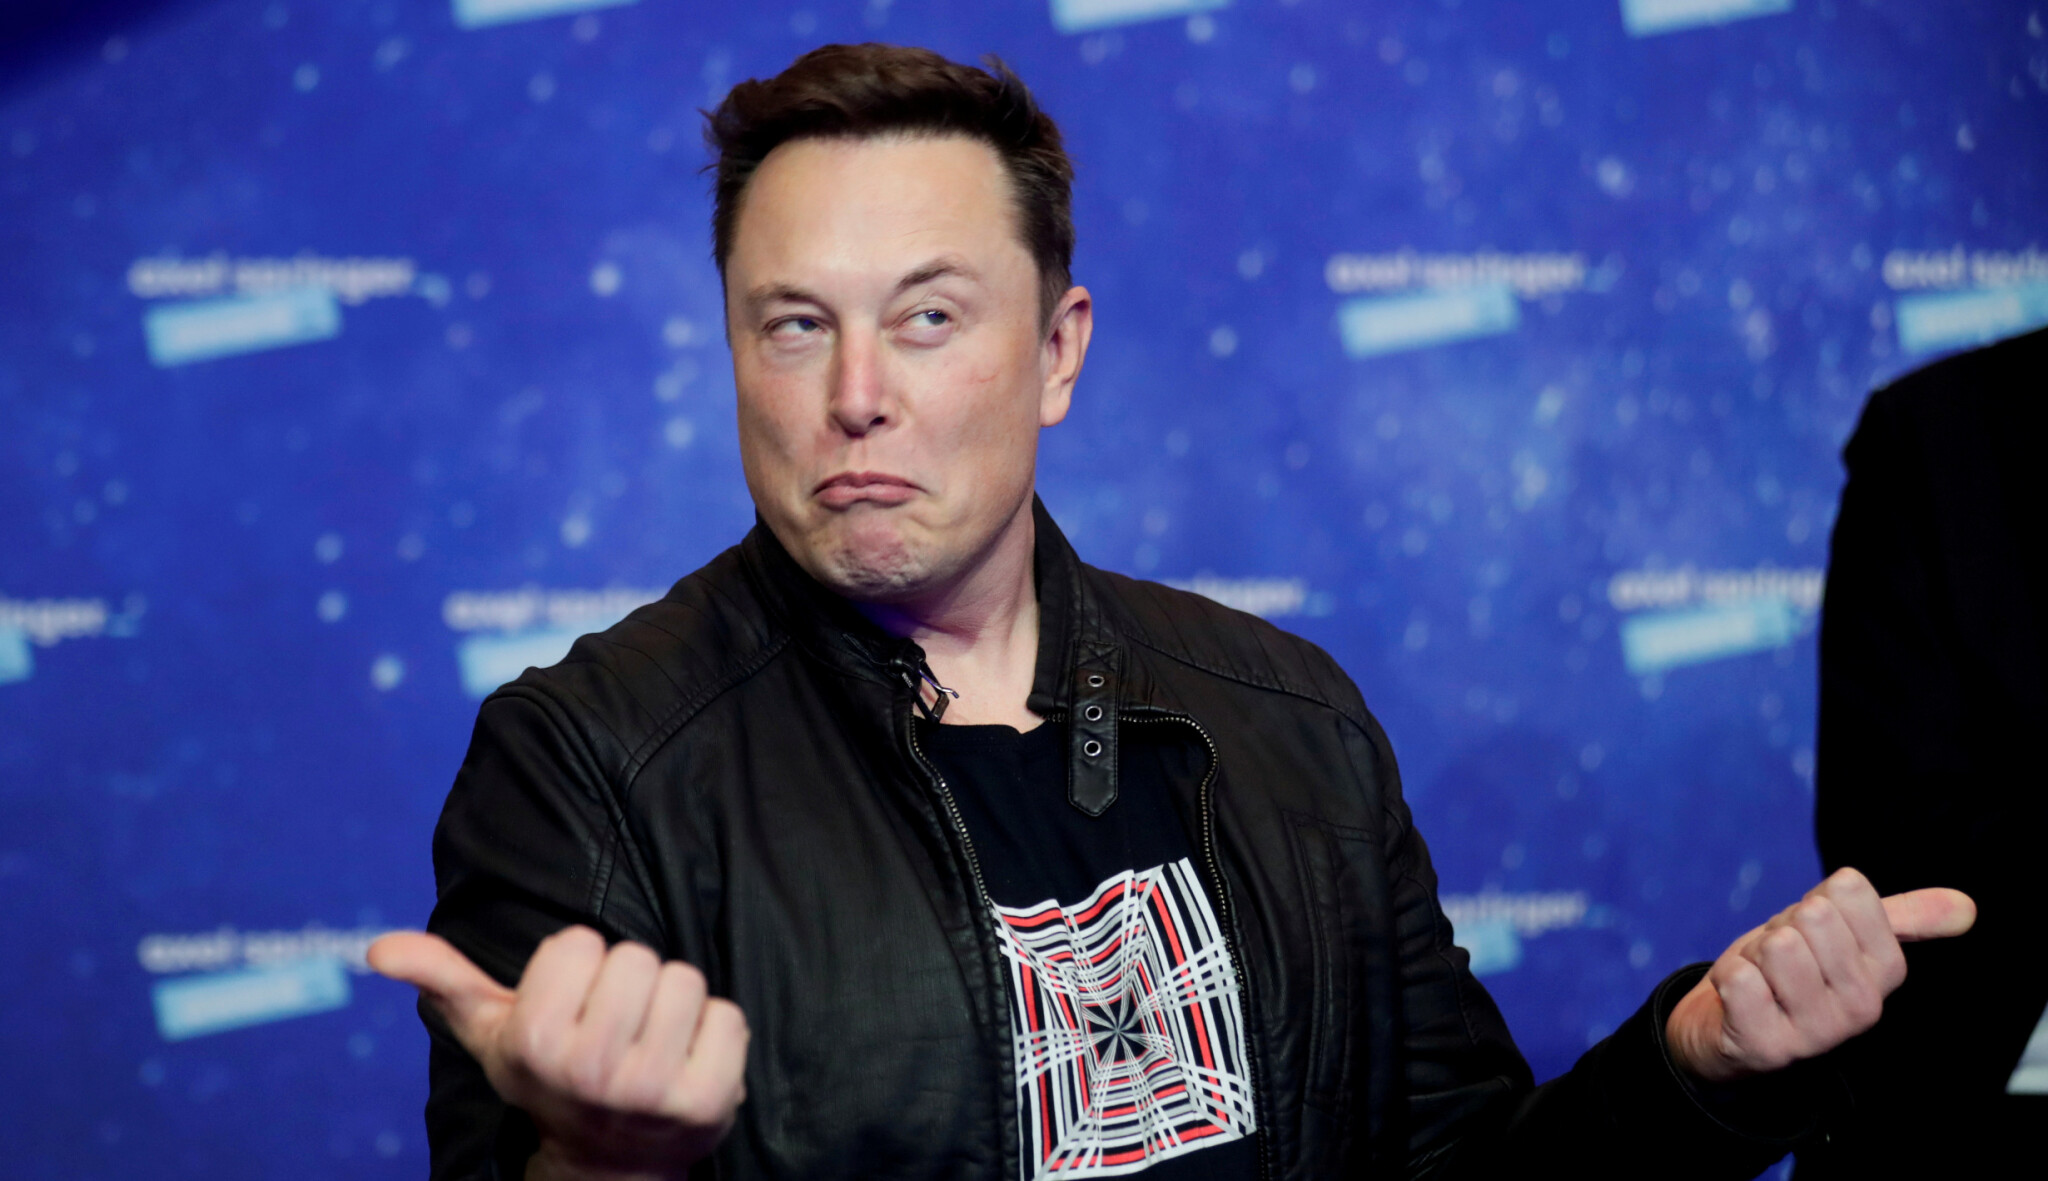 Musk nepodporuje zvýšení cel na dovoz elektromobilů z Číny. V lednu mluvil jinak